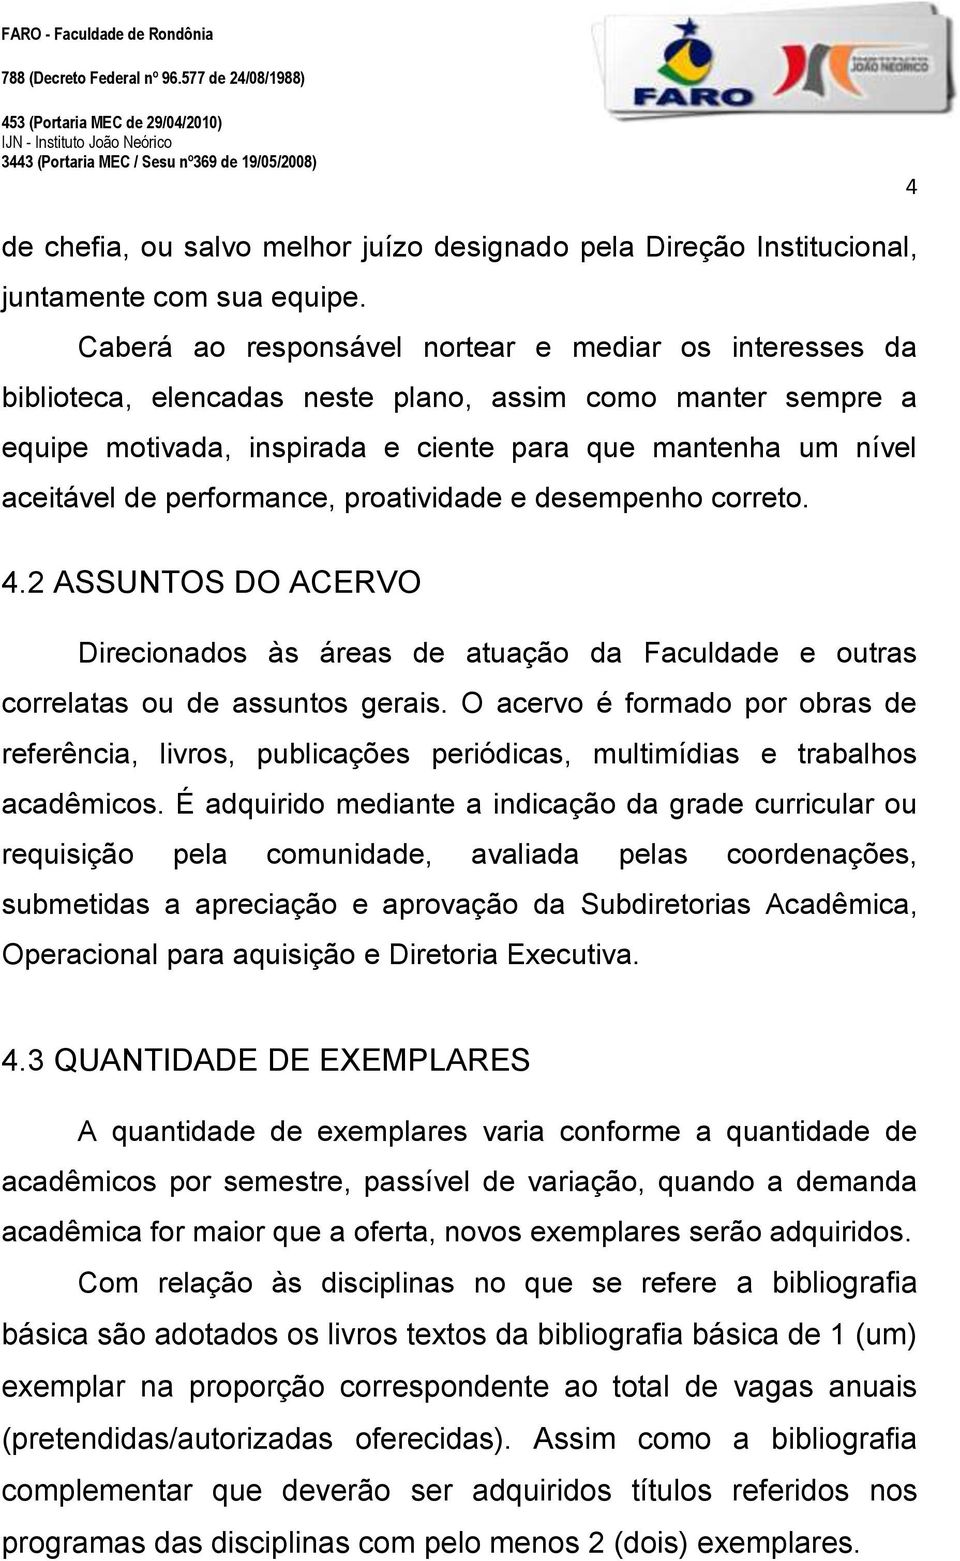 performance, proatividade e desempenho correto. 4.2 ASSUNTOS DO ACERVO Direcionados às áreas de atuação da Faculdade e outras correlatas ou de assuntos gerais.